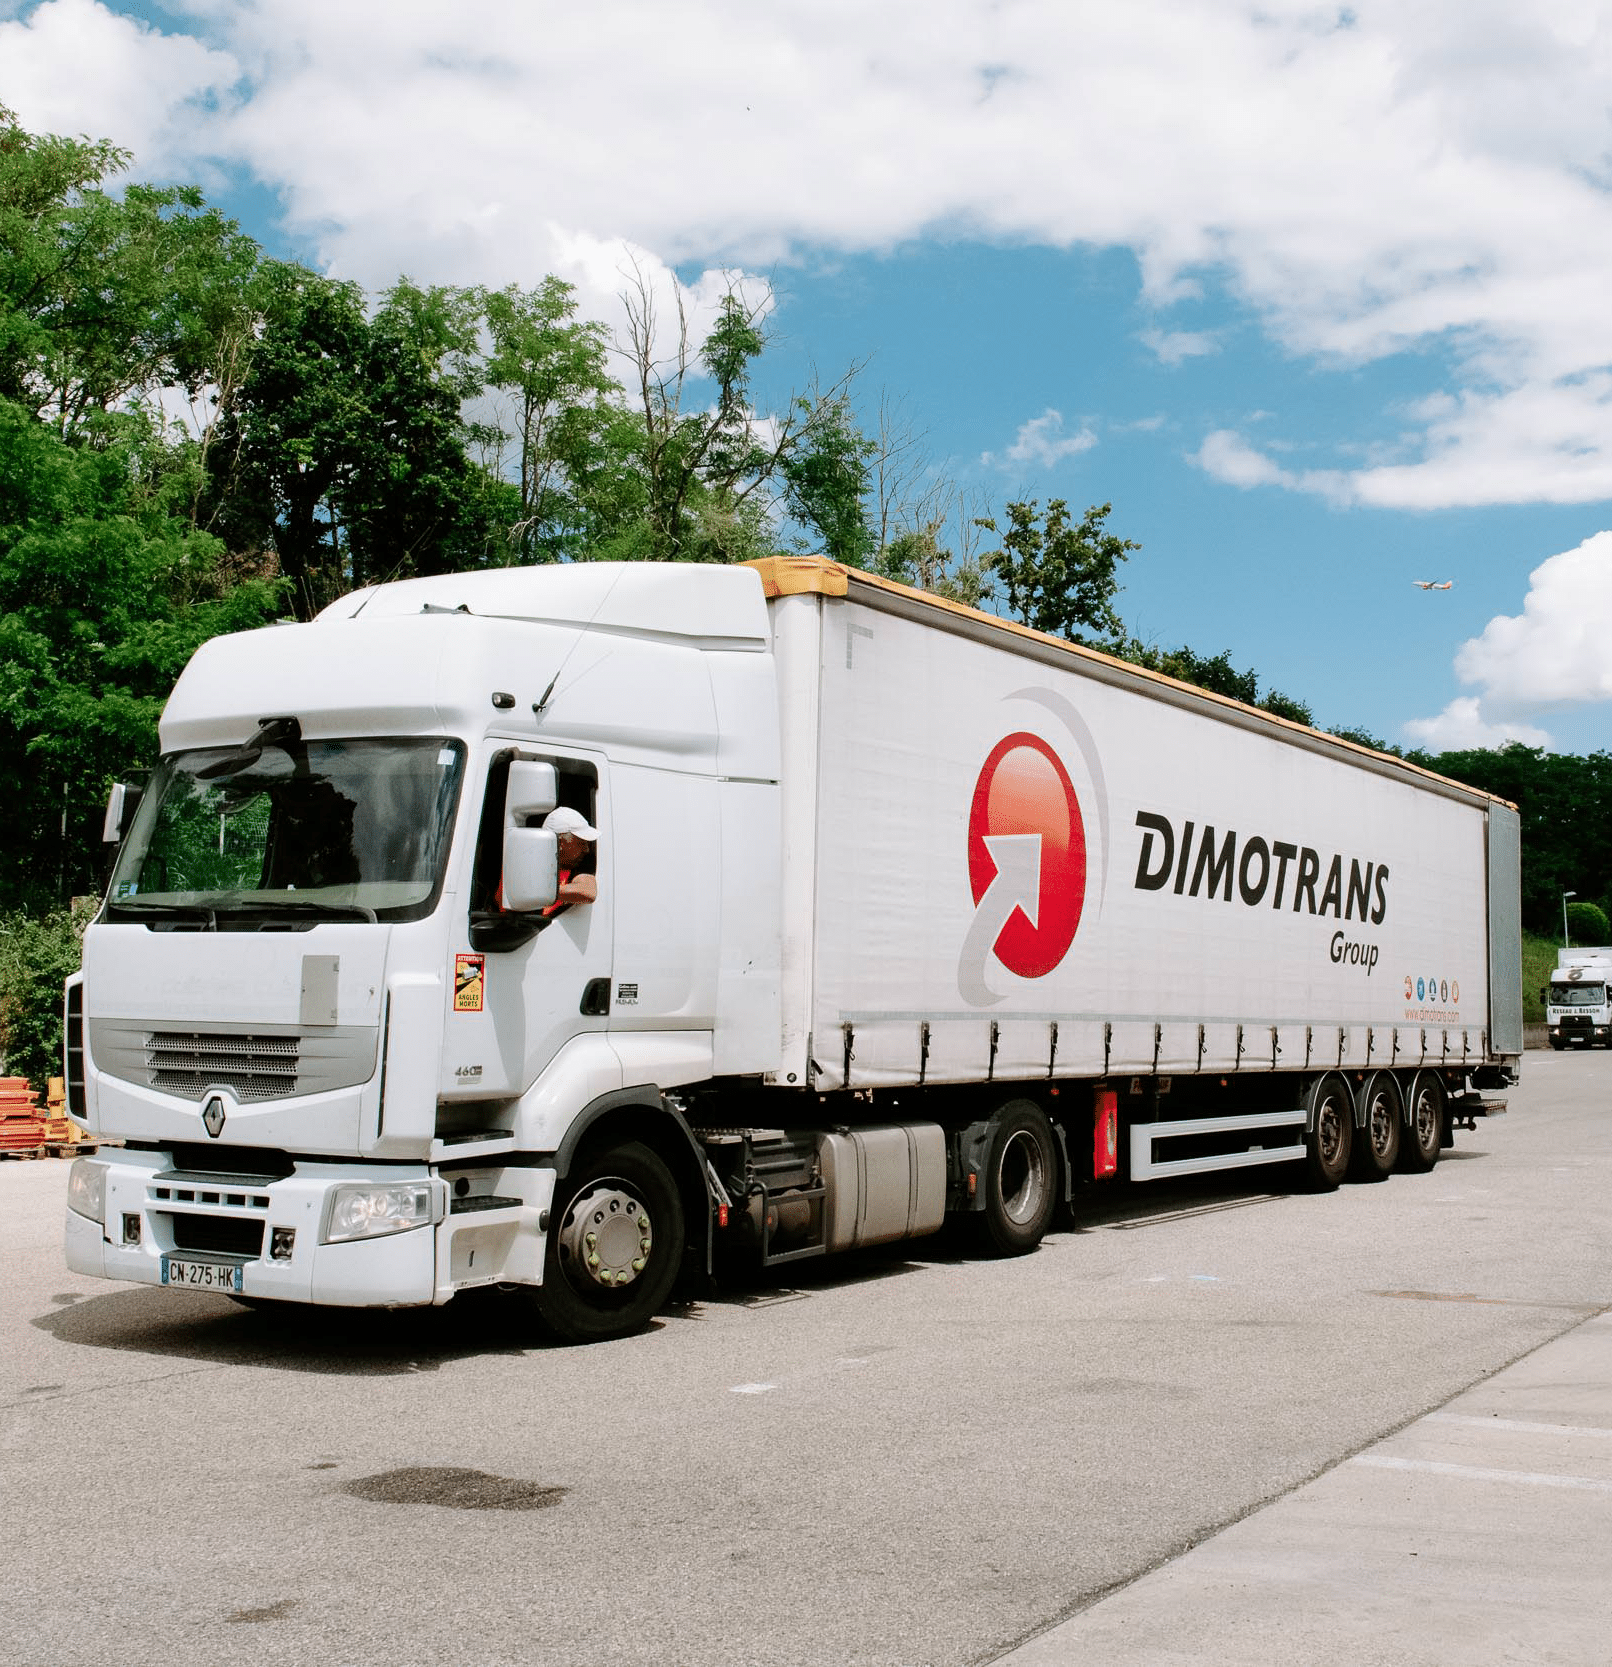 Camion DIMOTRANS Group Transport routier International De Marchandises